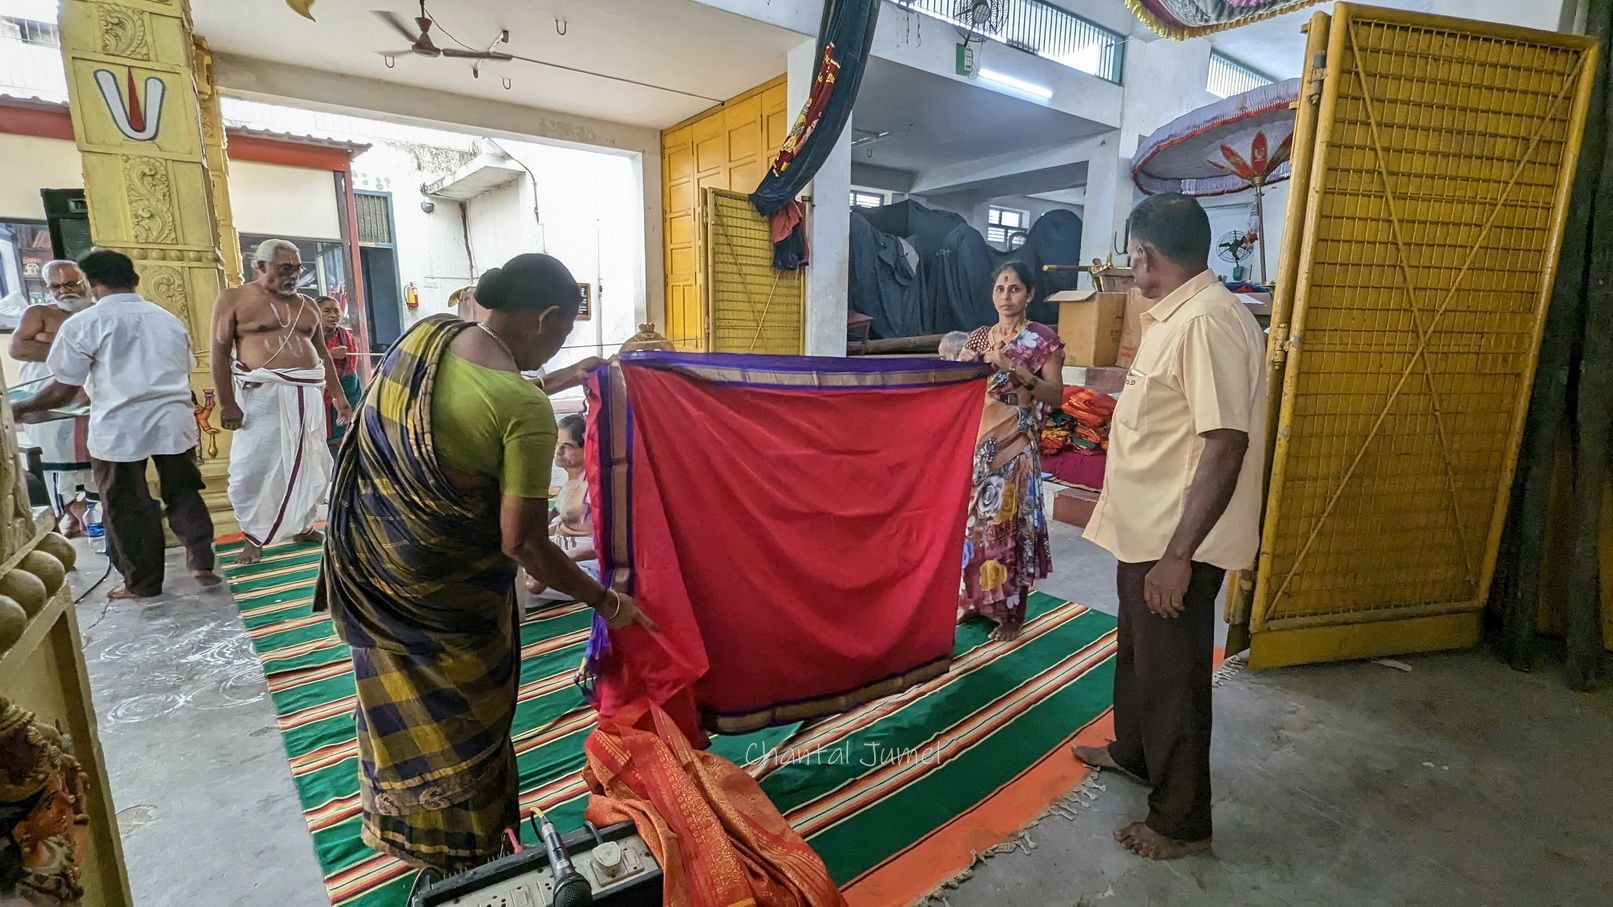 Kolam et vente aux enchères de saris